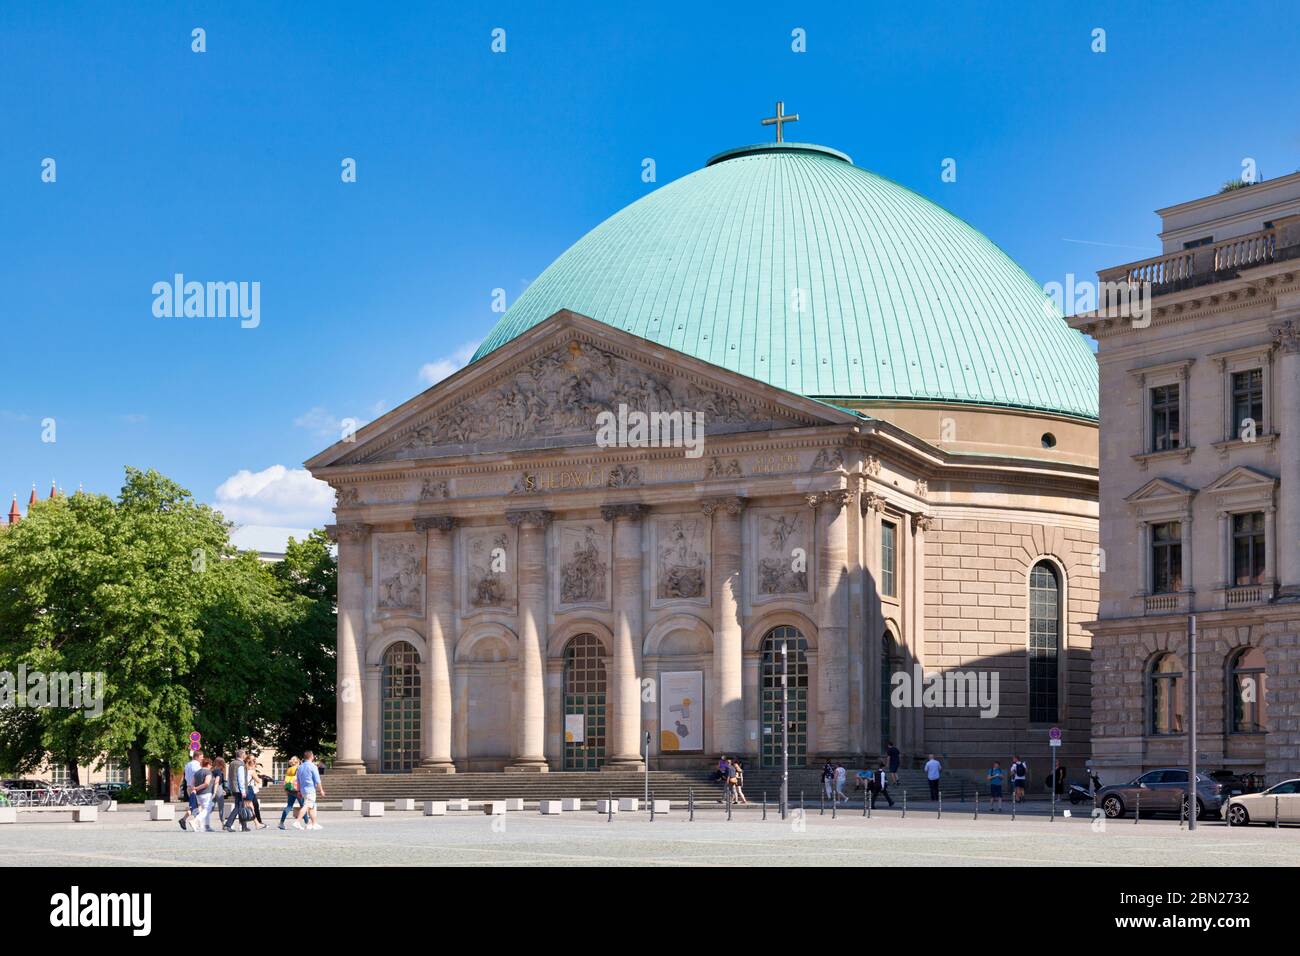 Berlino, Germania - 01 2019 giugno: La Cattedrale di S. Edvige (in tedesco Sankt-Hedwigs-Cattedrale) è una cattedrale cattolica romana situata sulla Bebelplatz. È t Foto Stock